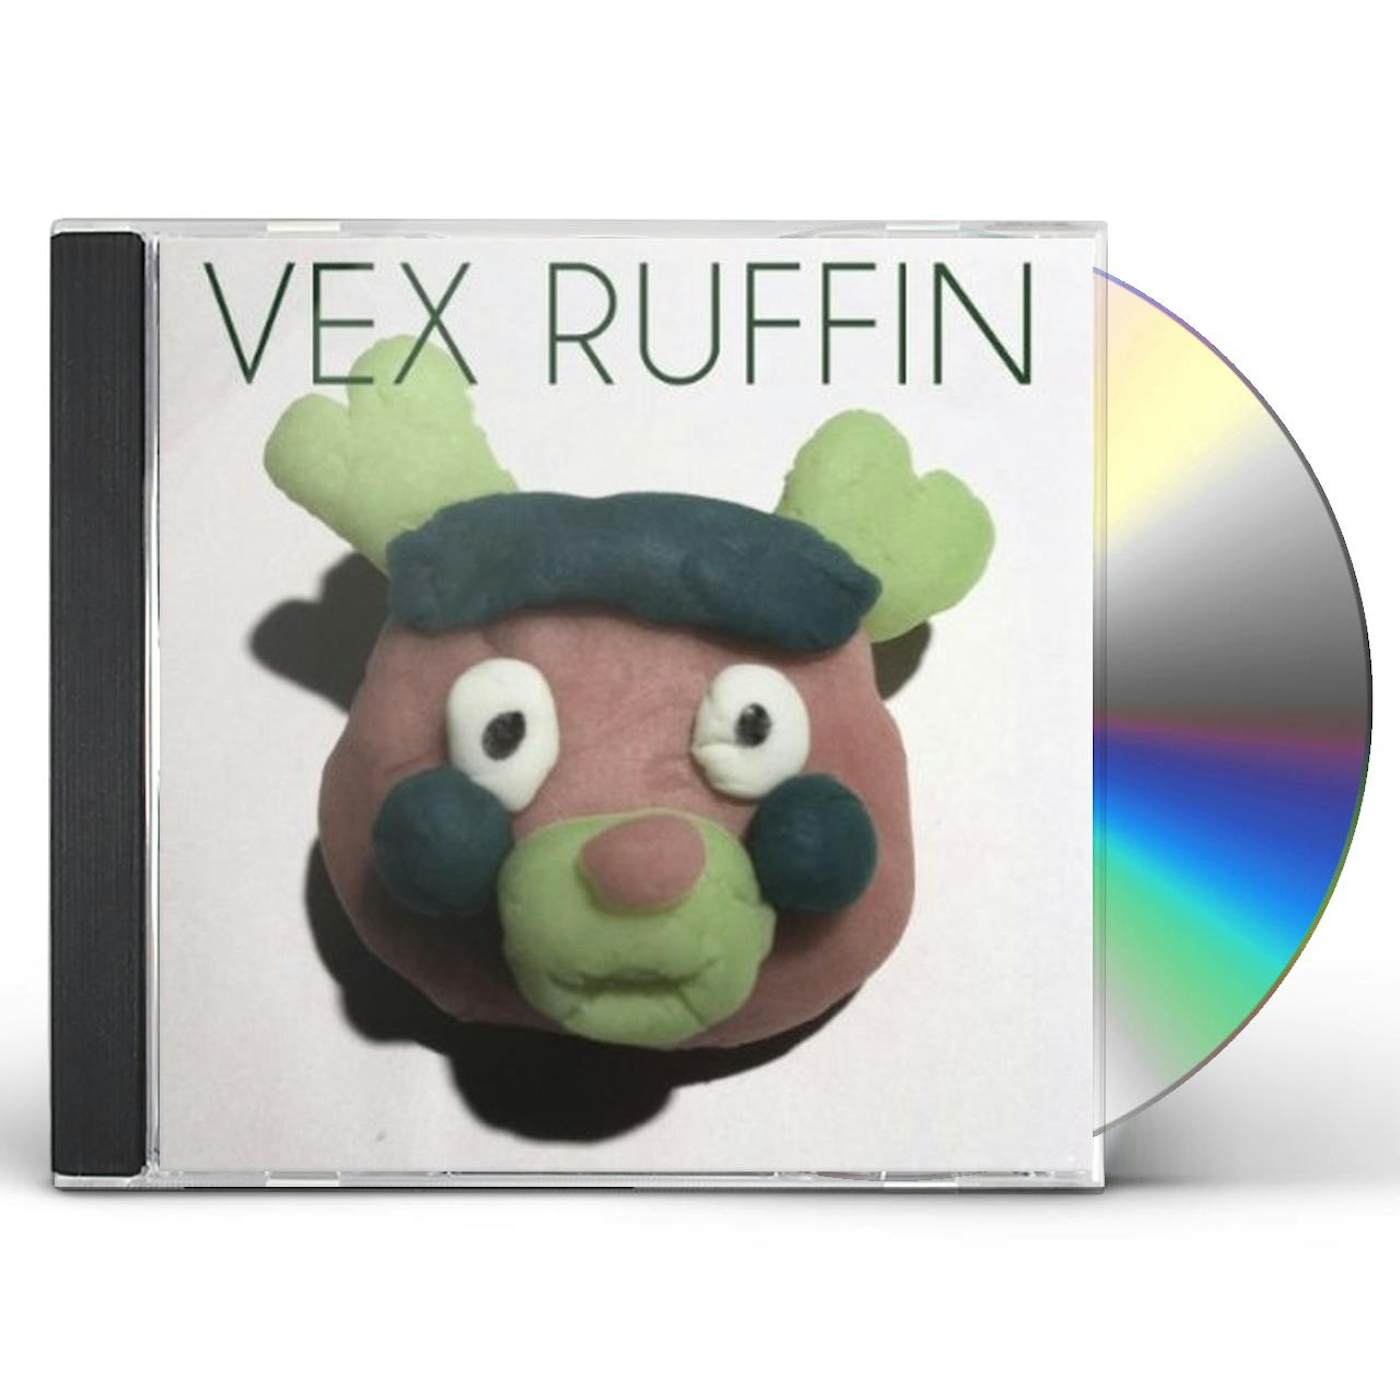 VEX RUFFIN CD